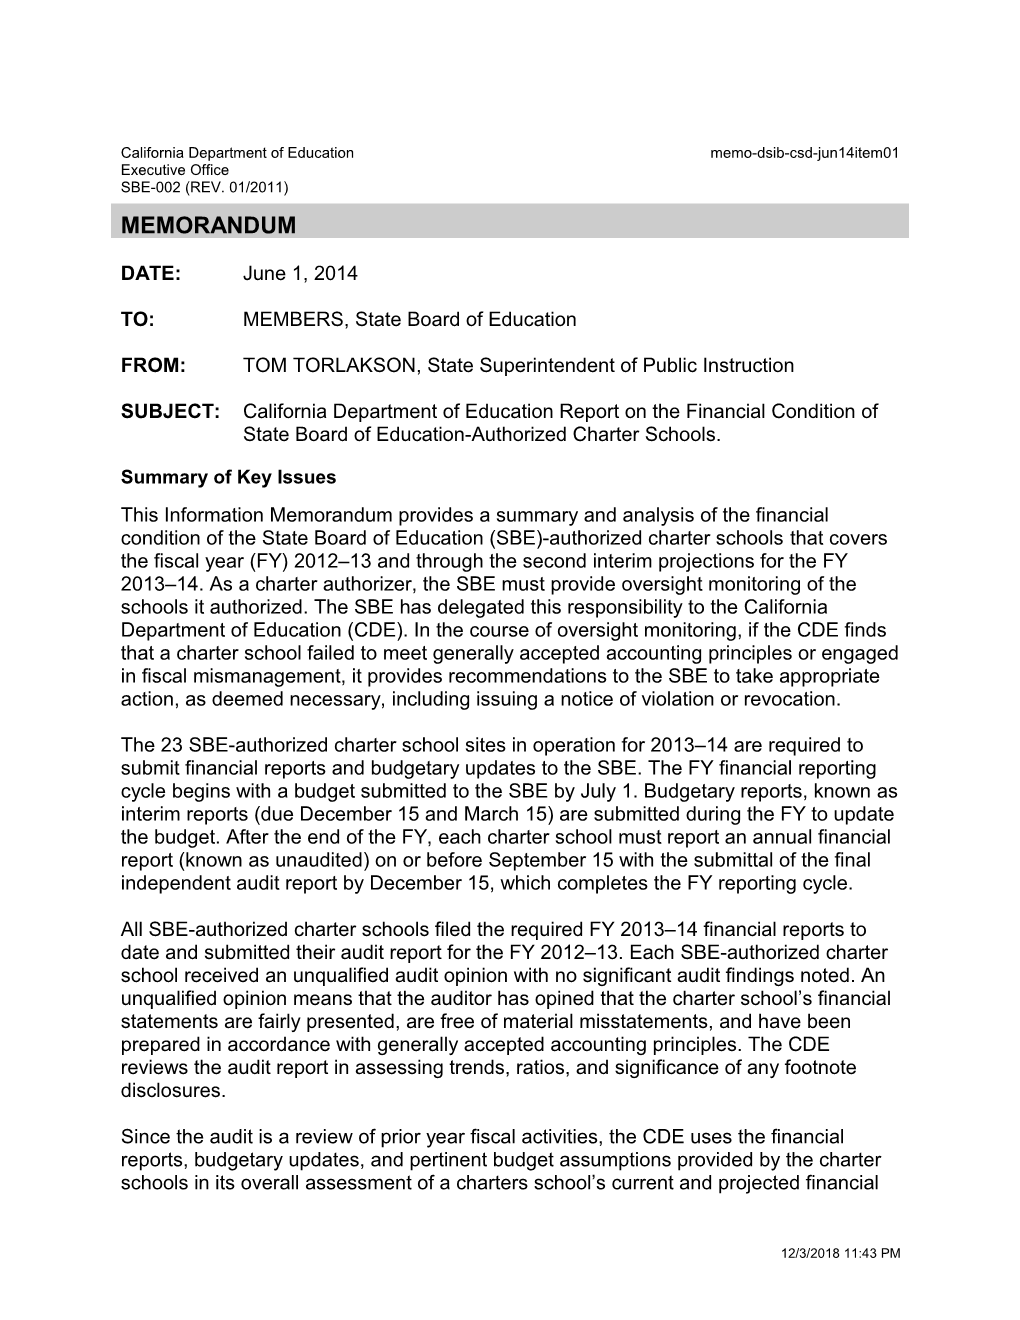 June 2014 Memorandum CSD Item 01 - Information Memorandum (CA State Board of Education)